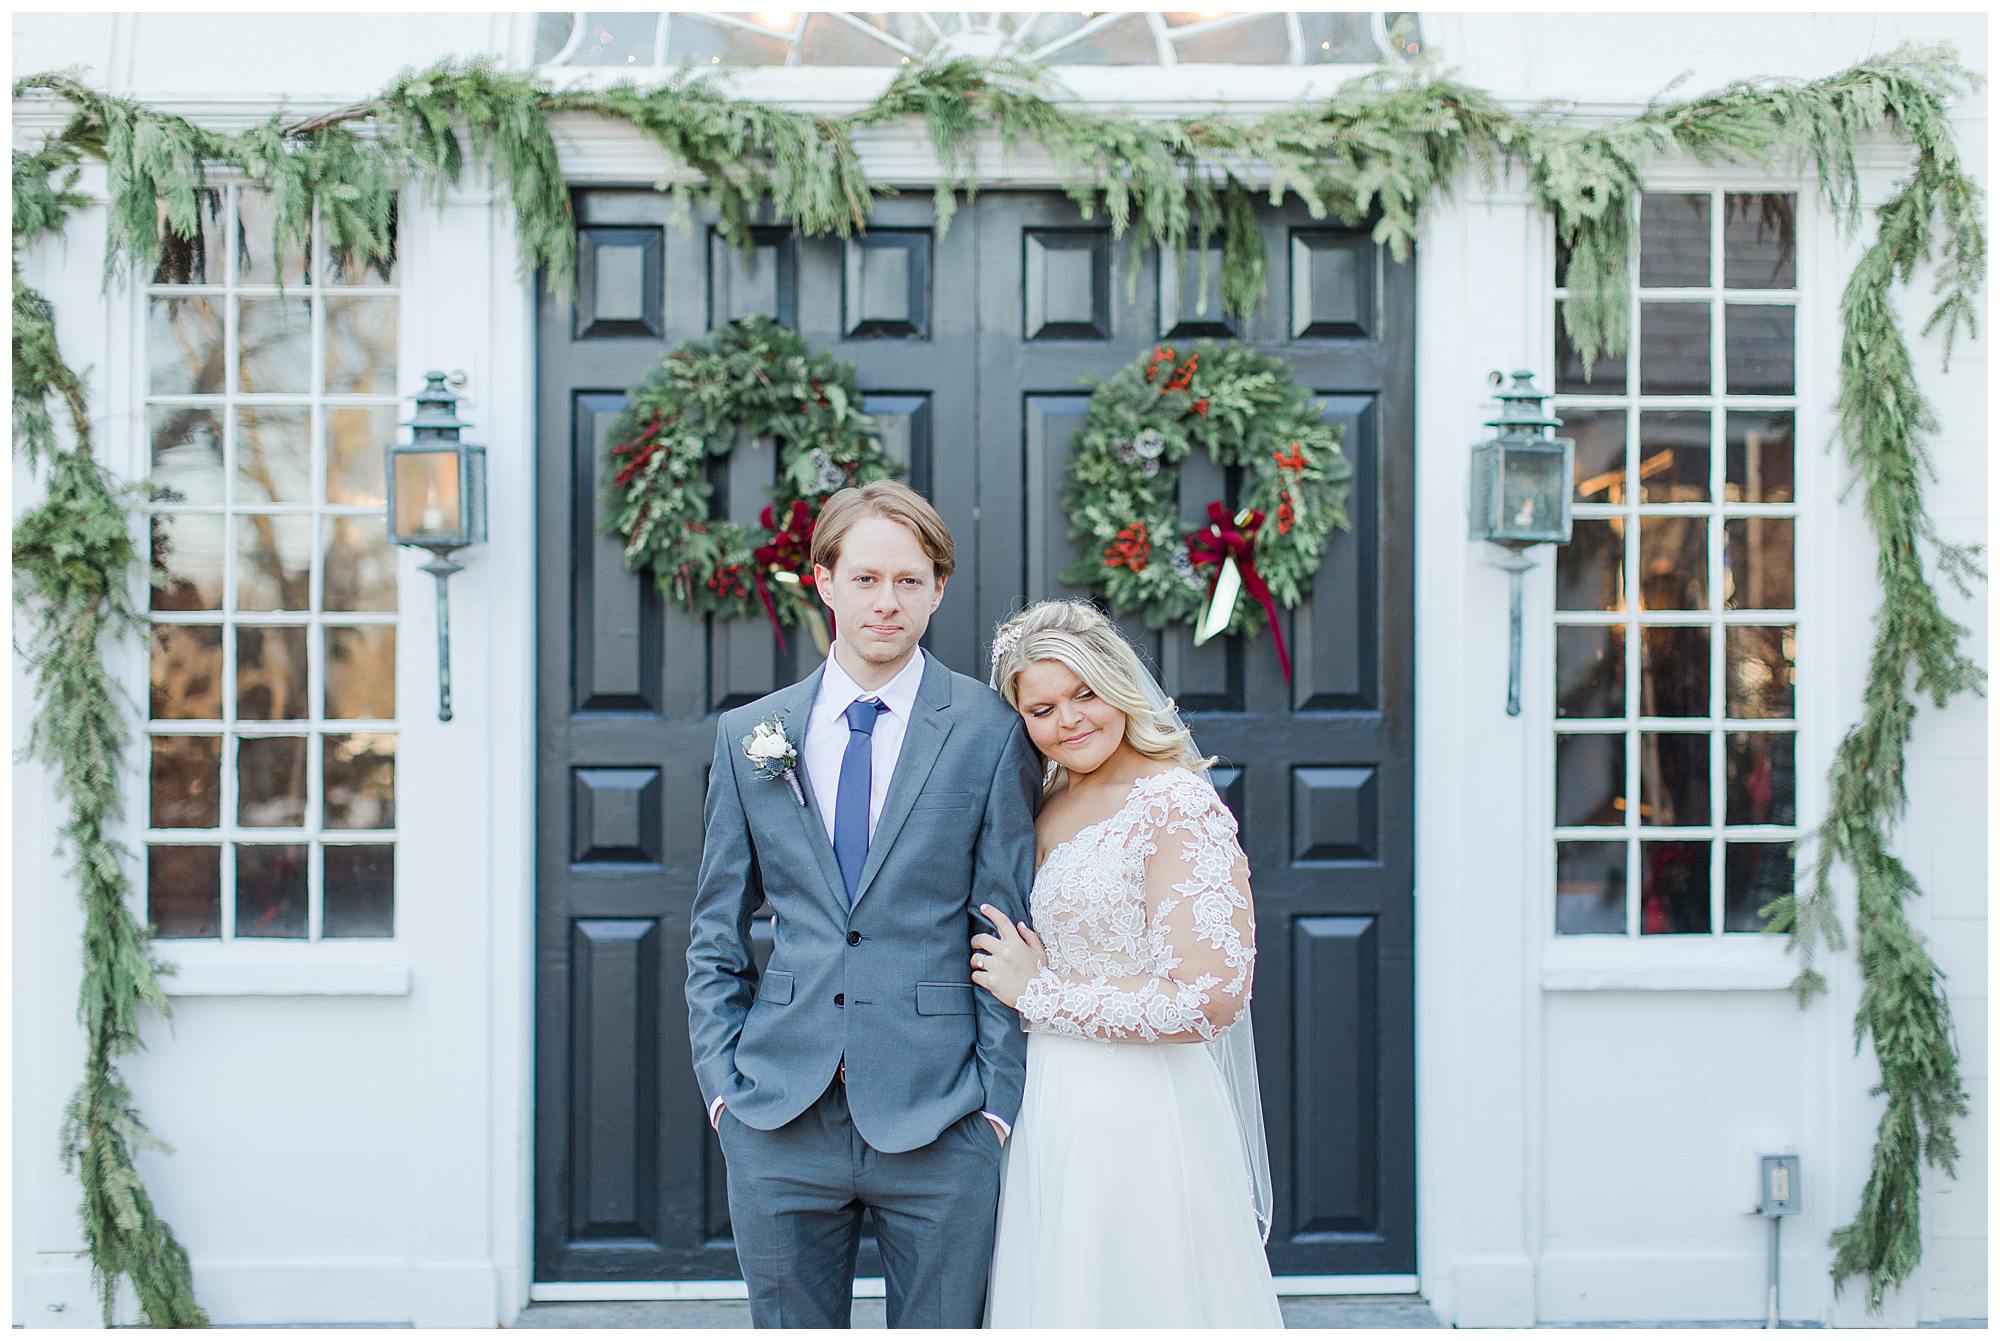 Colleen + Jonathan | Winter Wedding